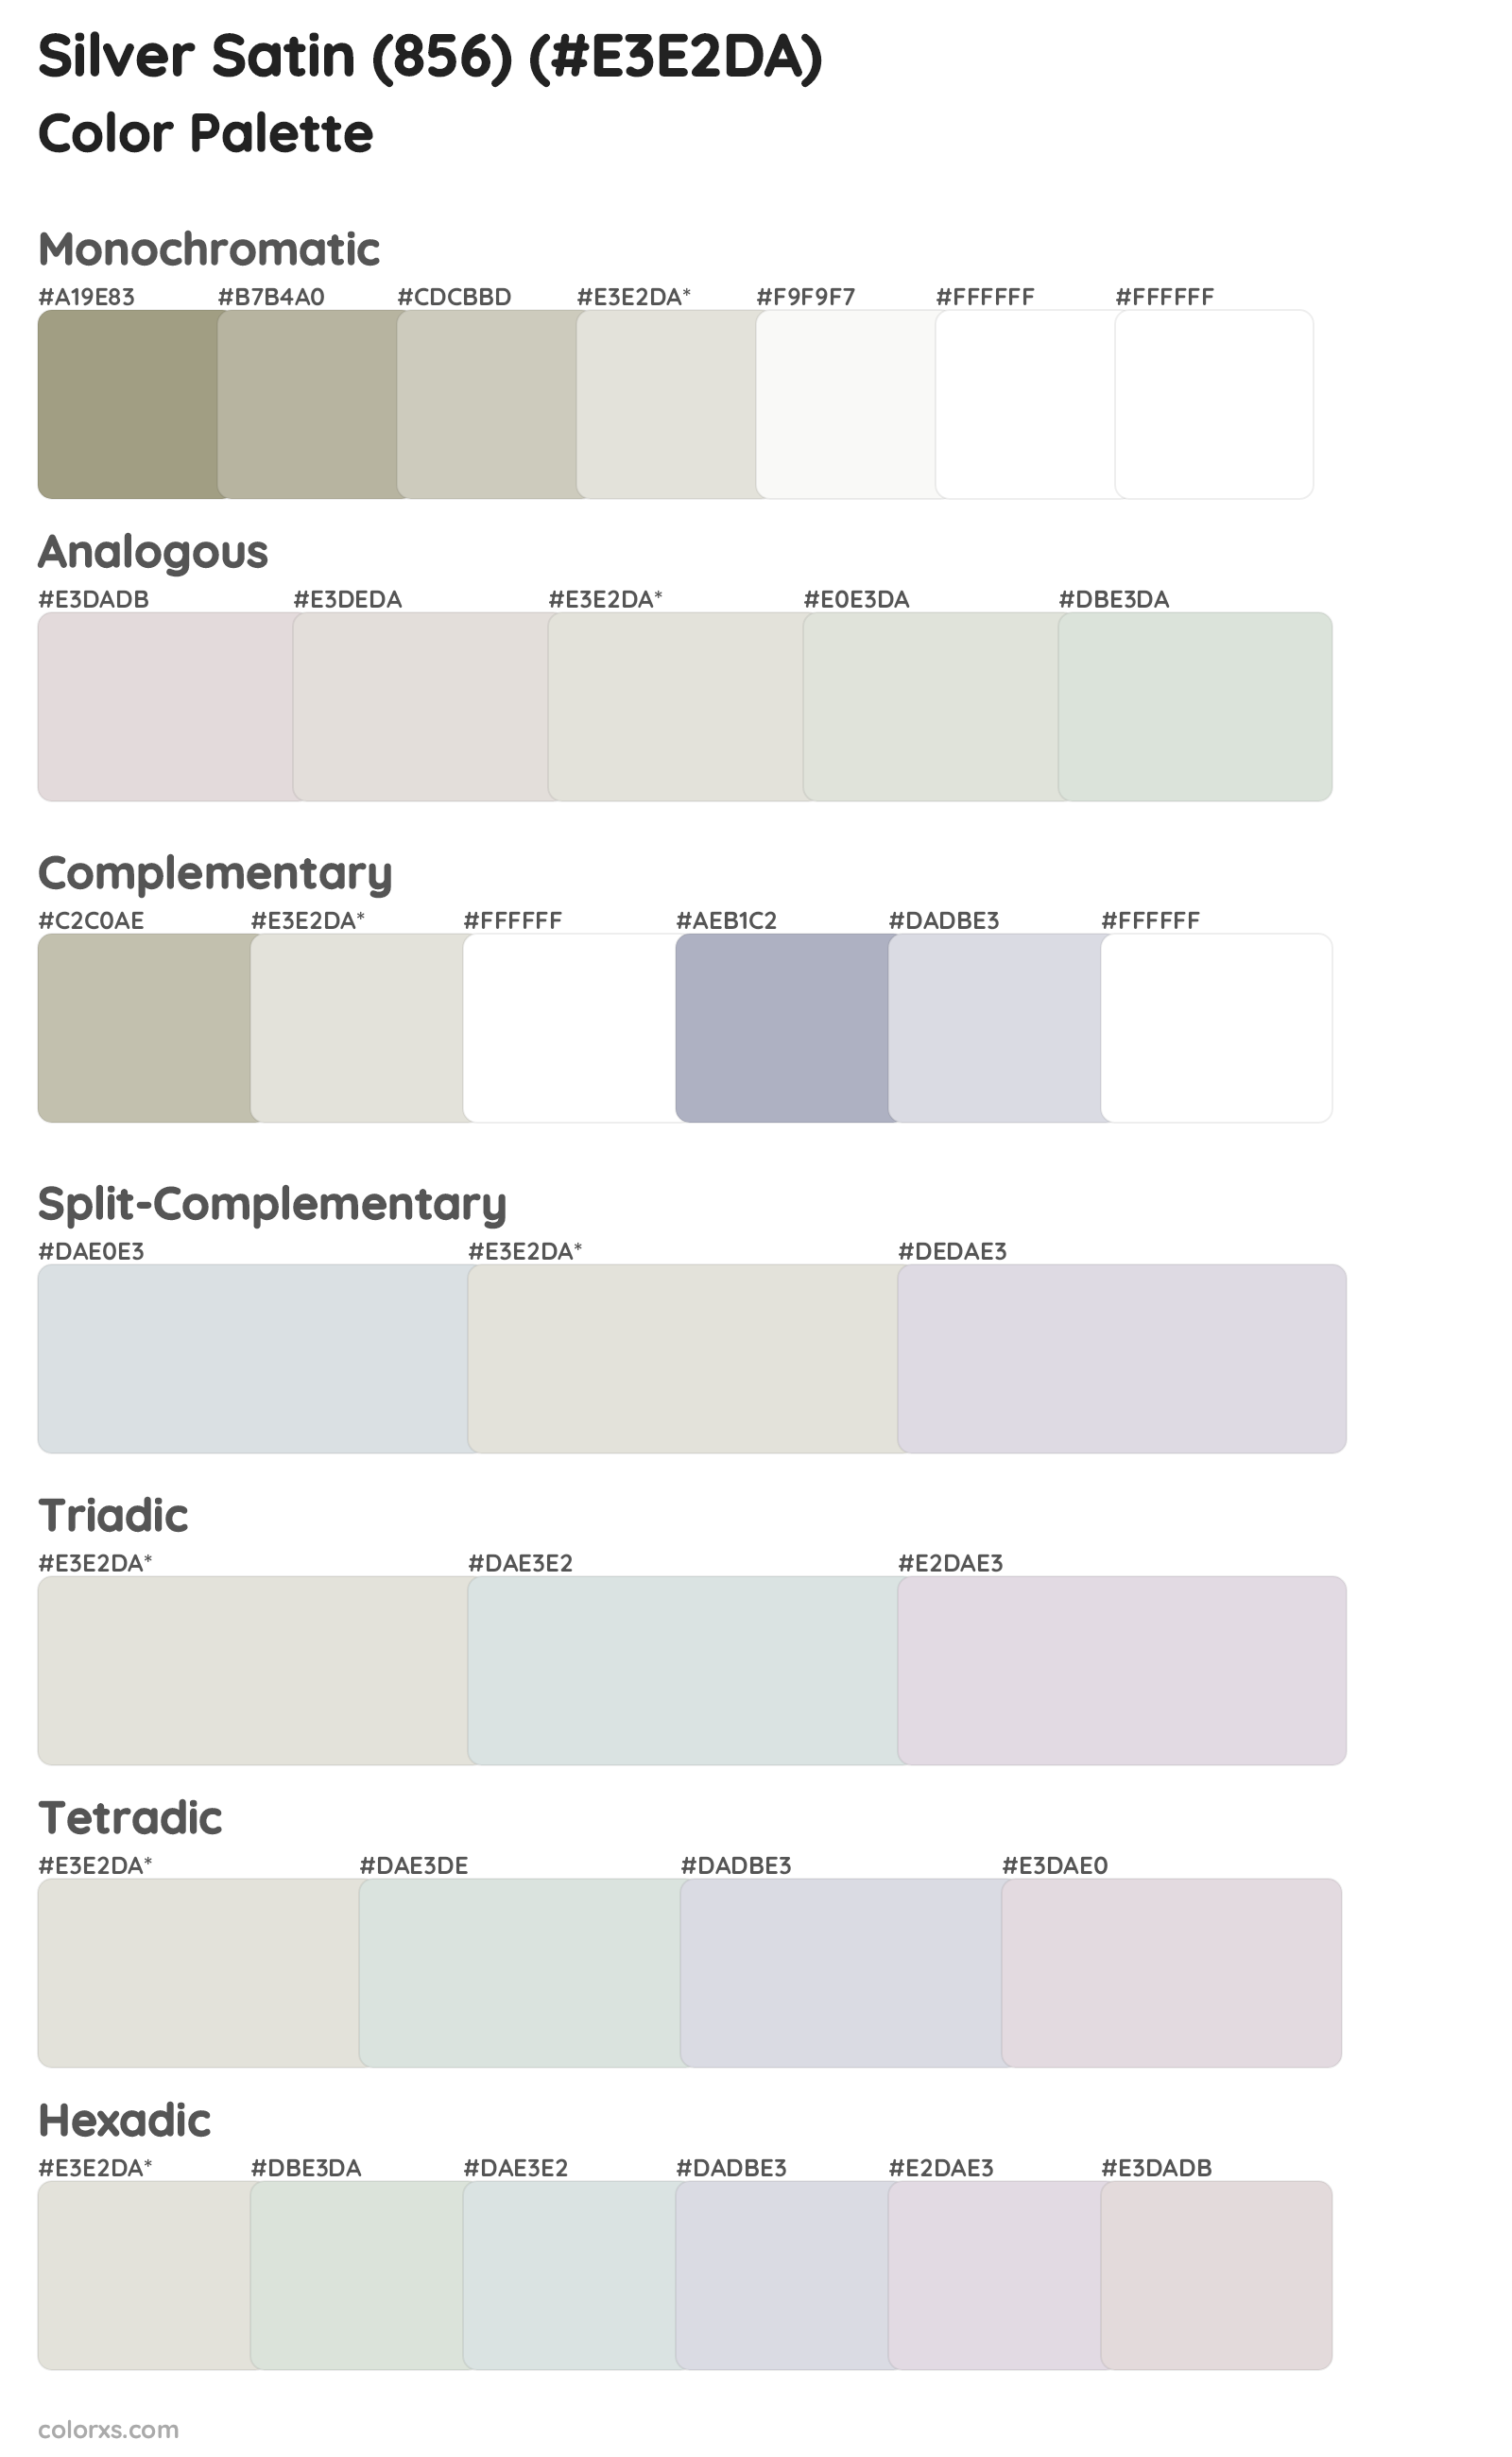 Silver Satin (856) Color Scheme Palettes